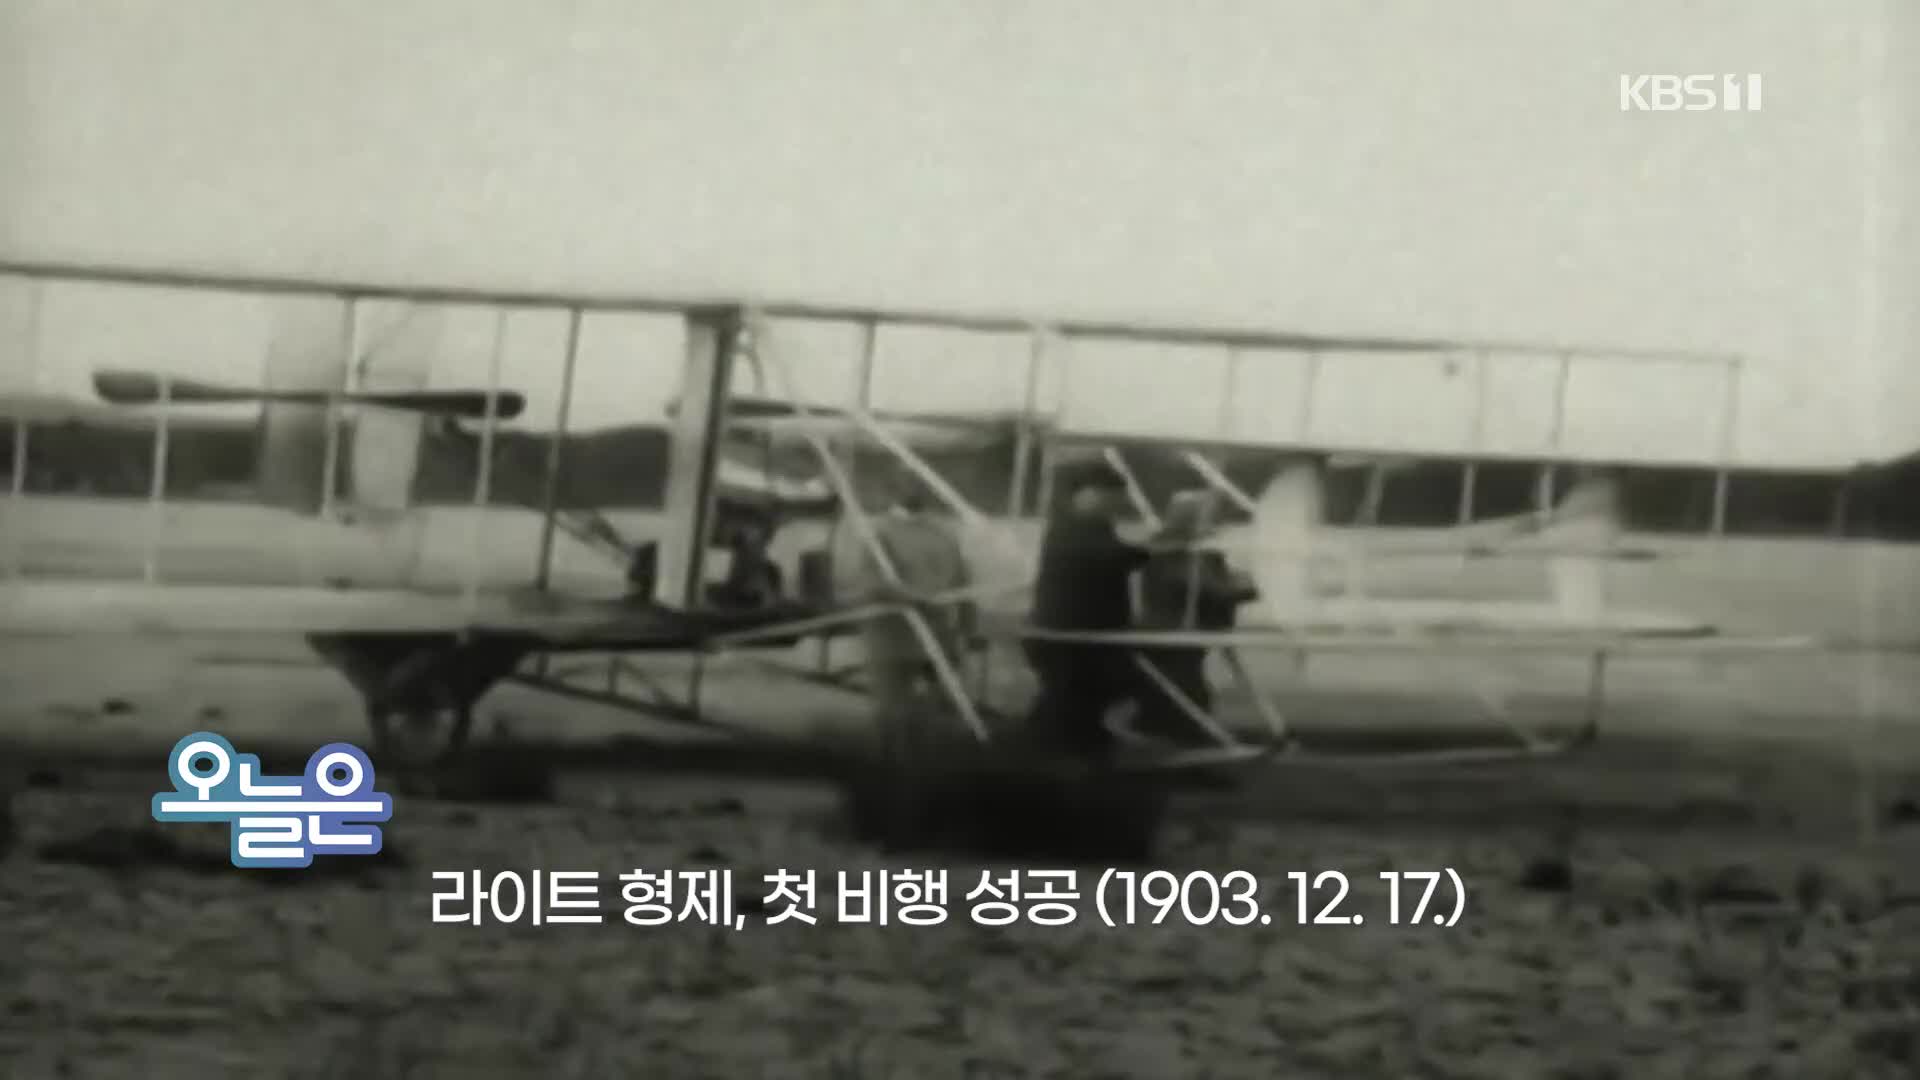 [오늘은] 라이트 형제, 첫 비행 성공 (1903.12.17.)